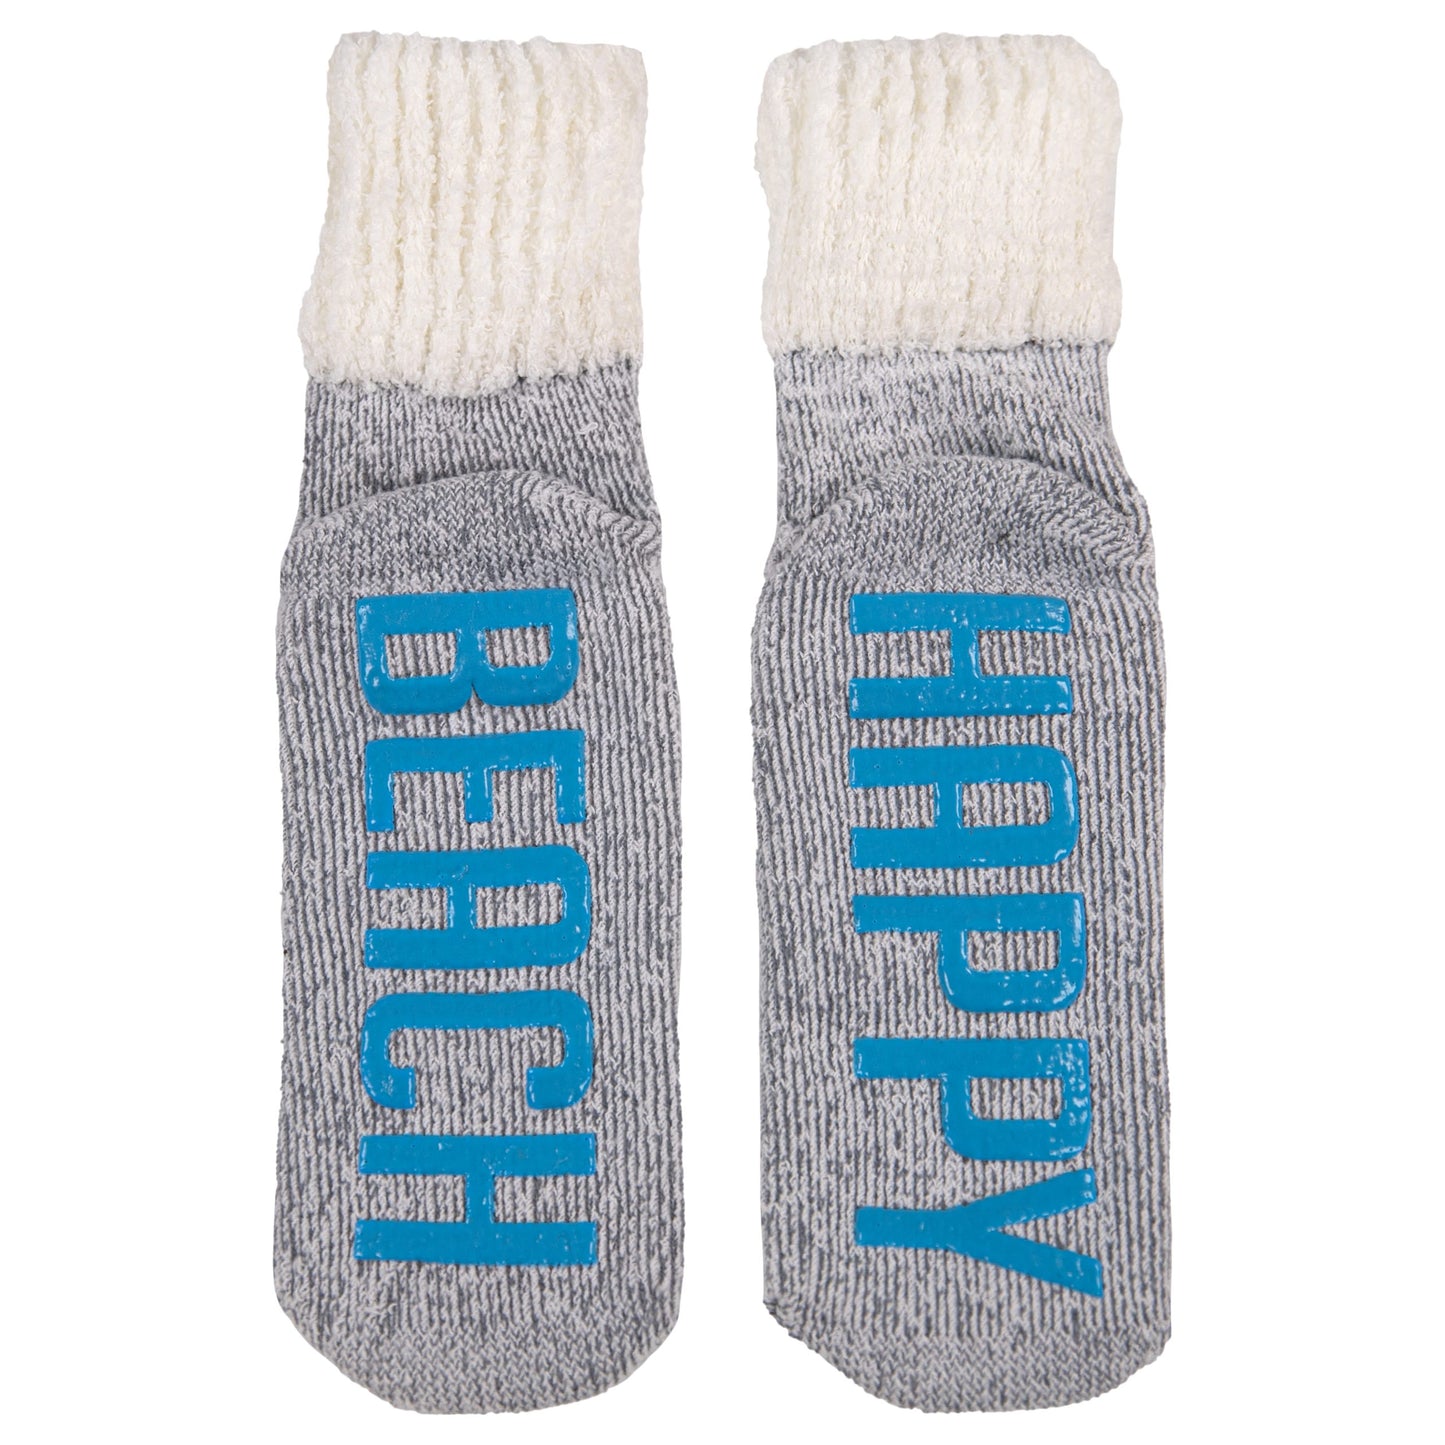 Soft & Cozy Nonslip Socks